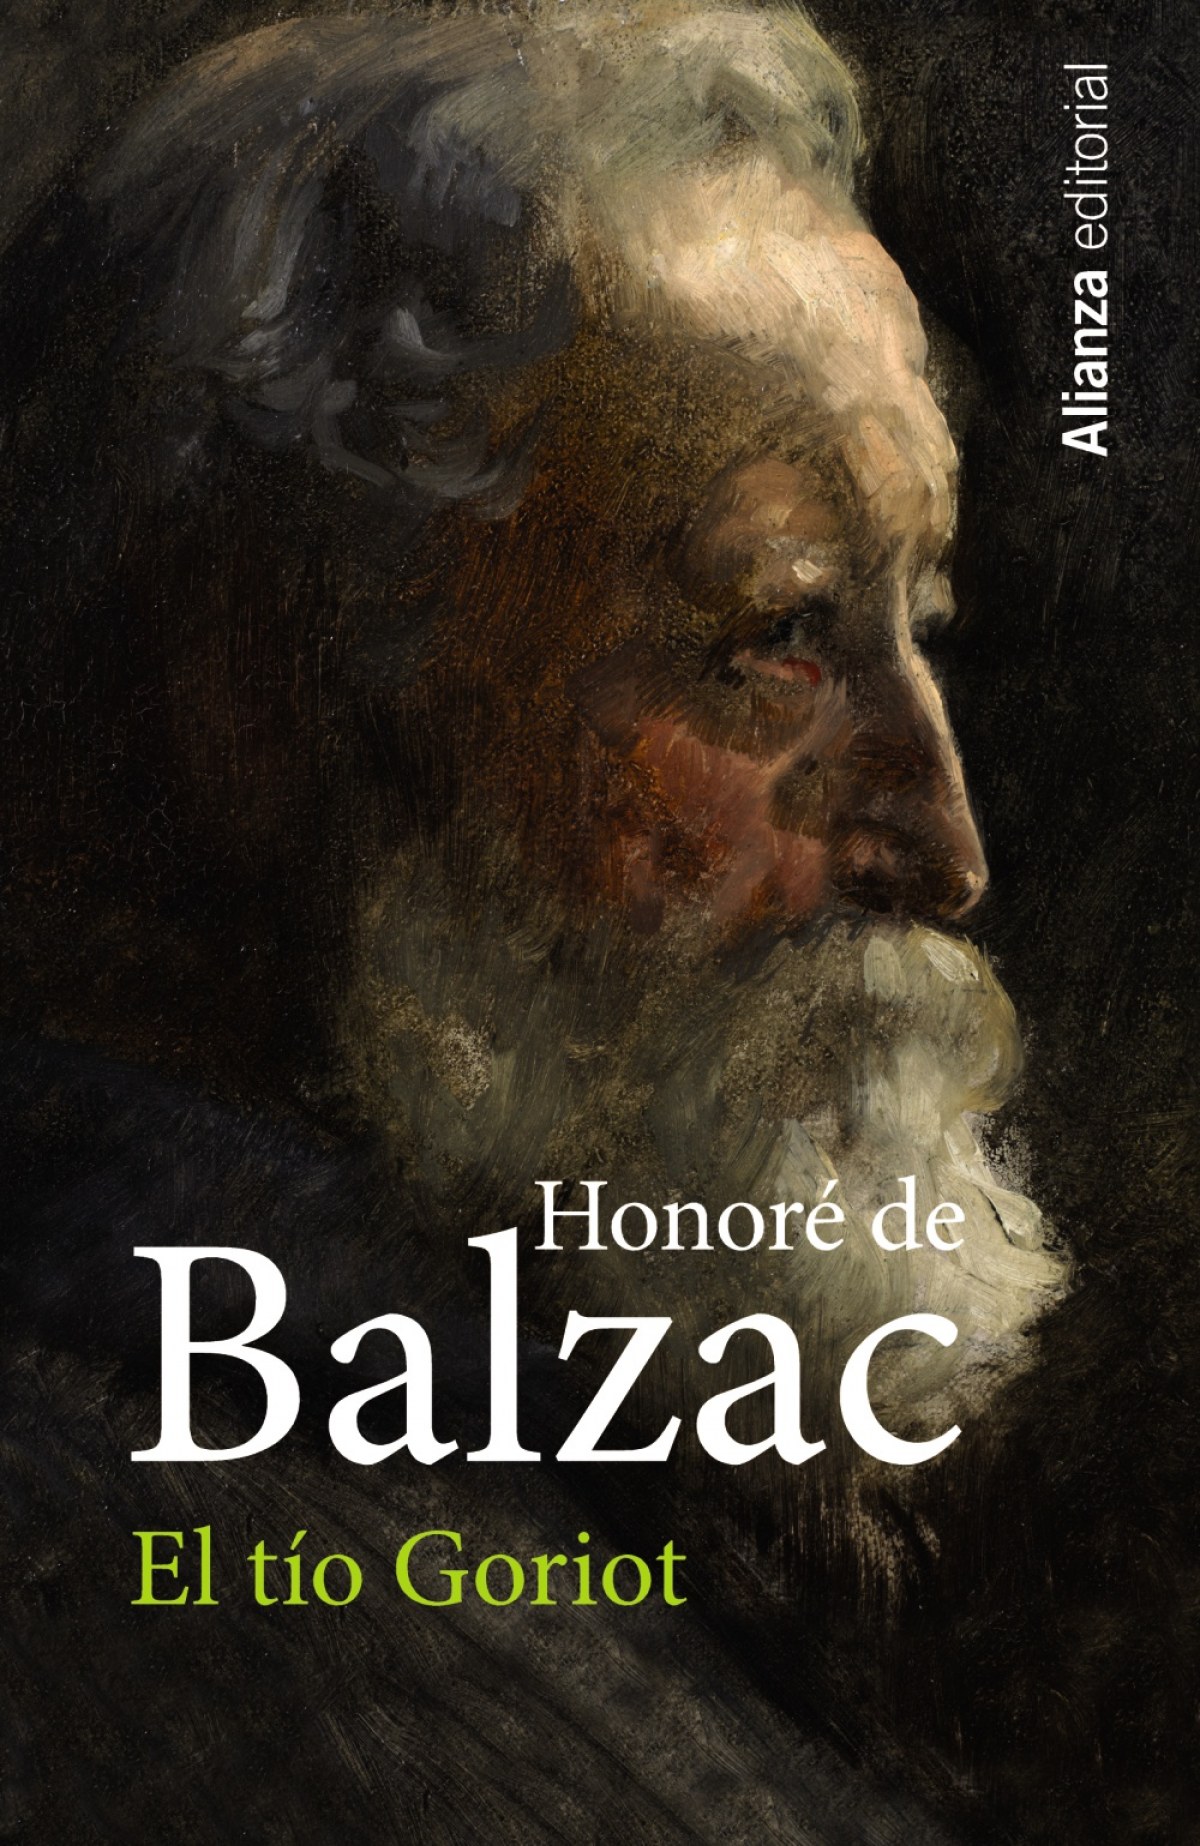 El tío goriot - Balzac, Honoré